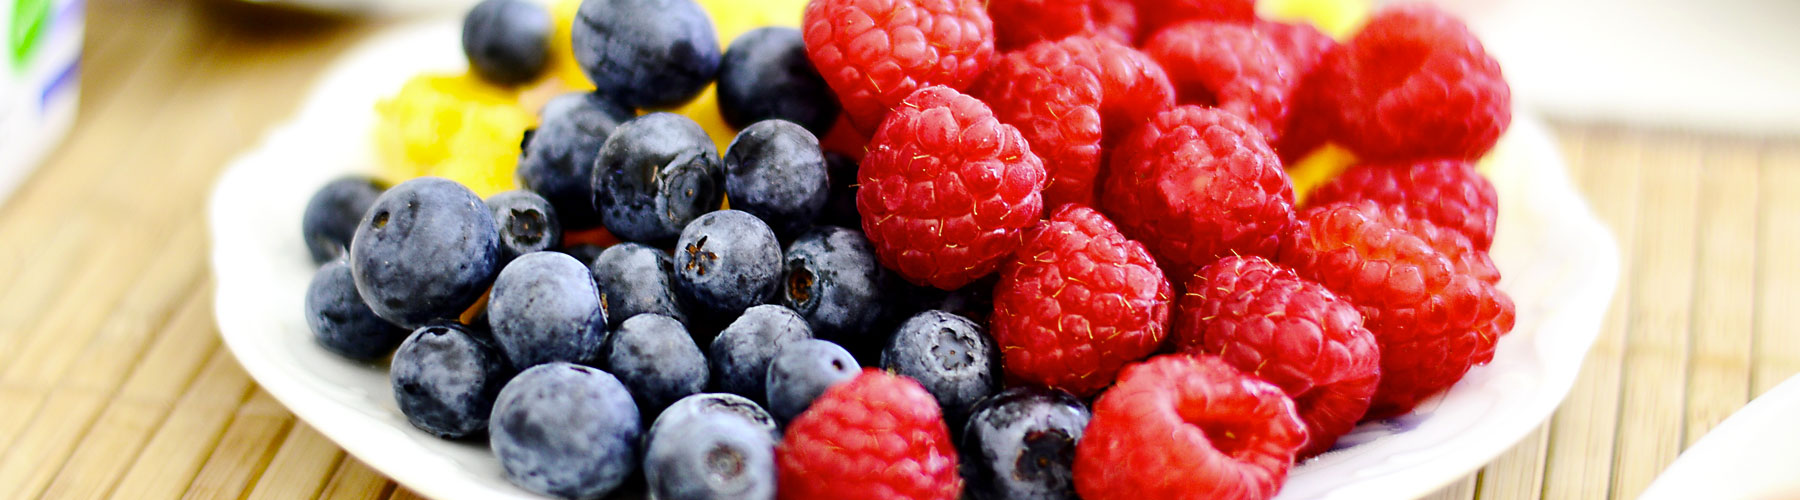 Berries Raspberries Blueberries - Lynden